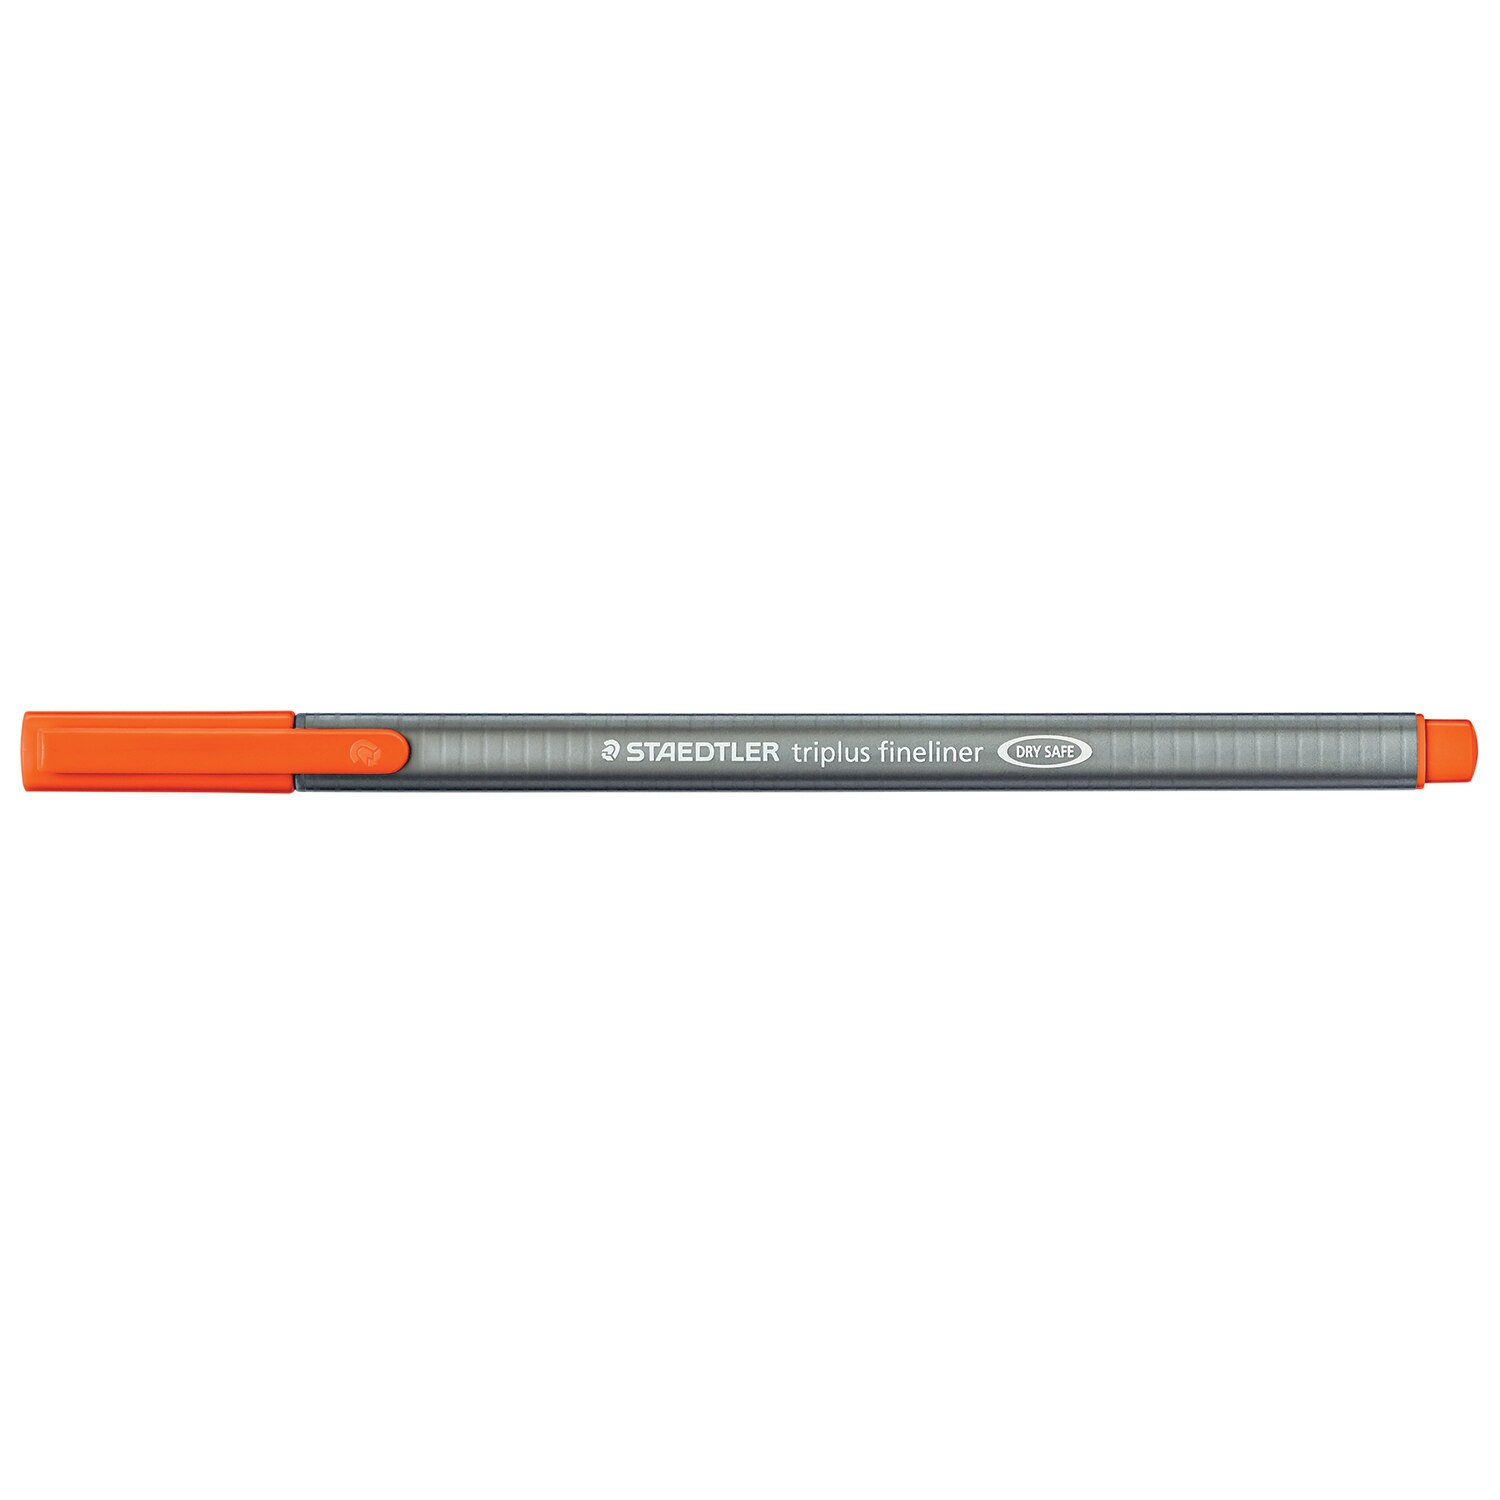 Staedtler Triplus Fineliner Pen - Orange